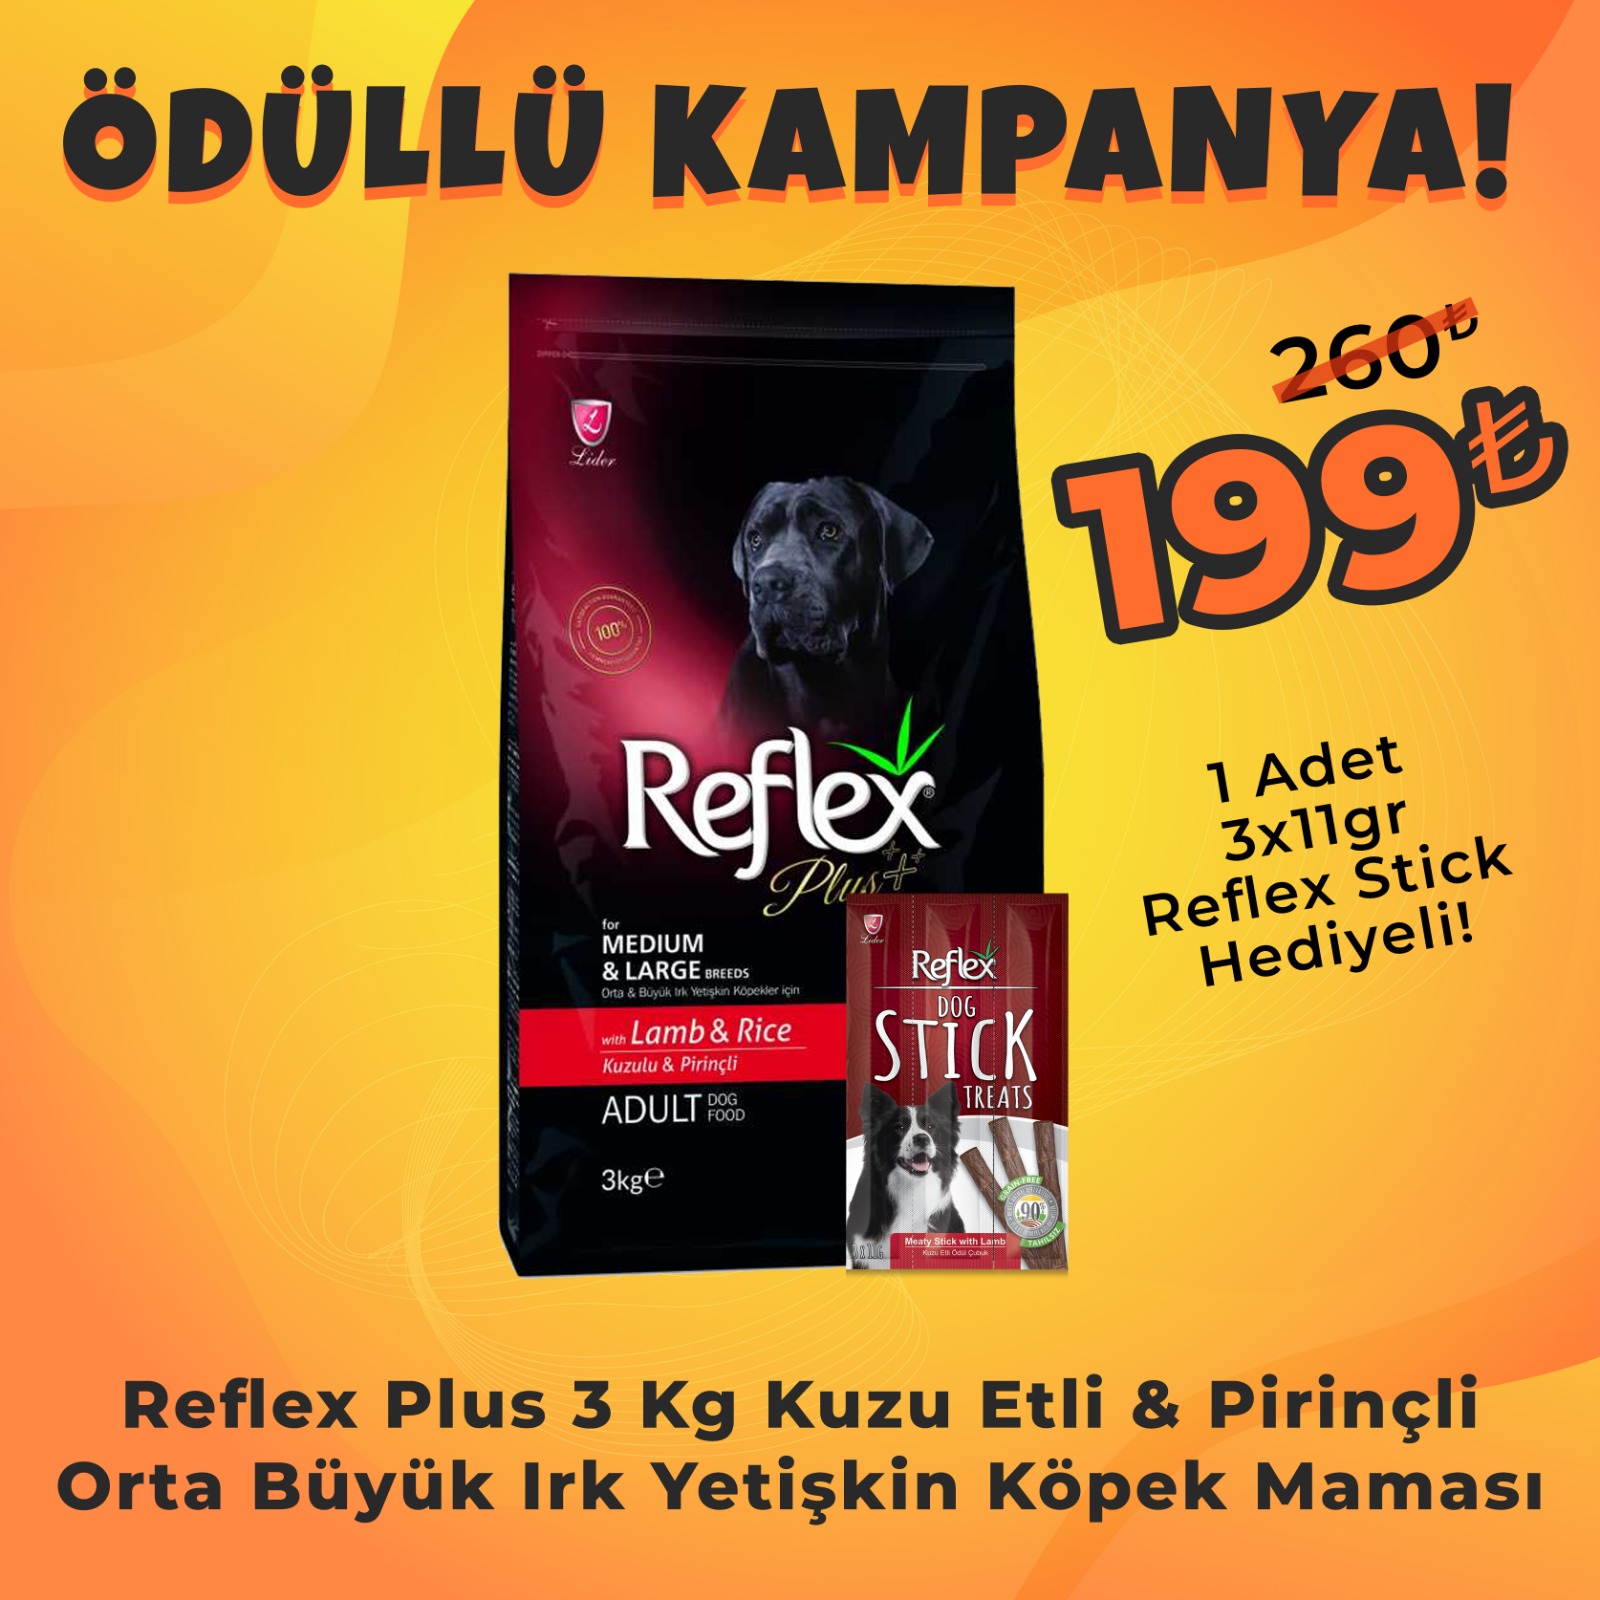 Reflex Plus Orta Büyük Irk Kuzu Pirinç Yetişkin Köpek Maması 3 Kg + Reflex Köpek Stick Ödül Hediyeli 3x11 Gr